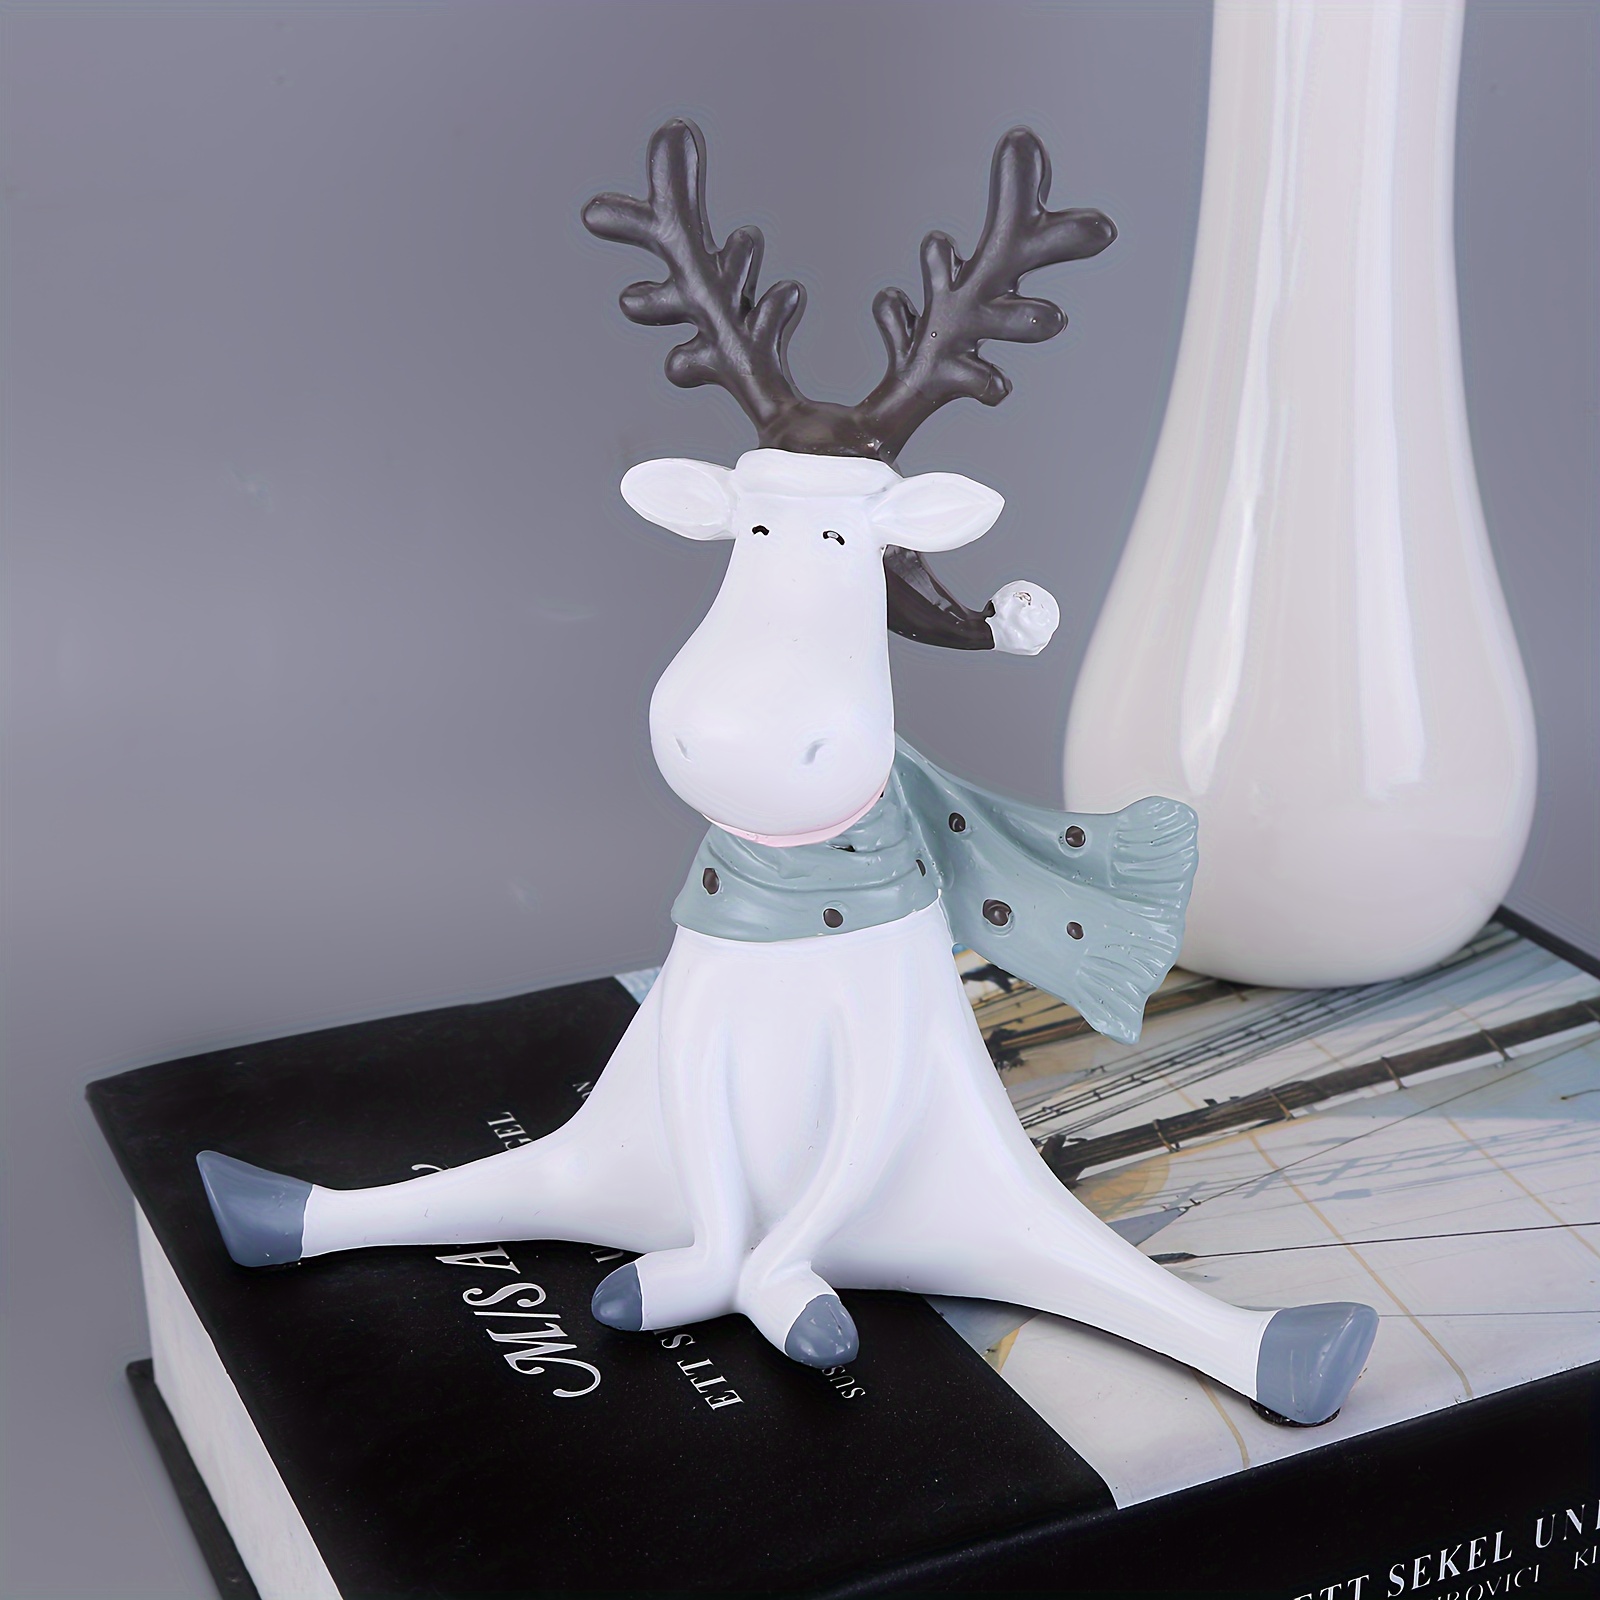 Peluche renne en tissu d'habillement 37 cm - tissu - pièce de Noël -  figurine